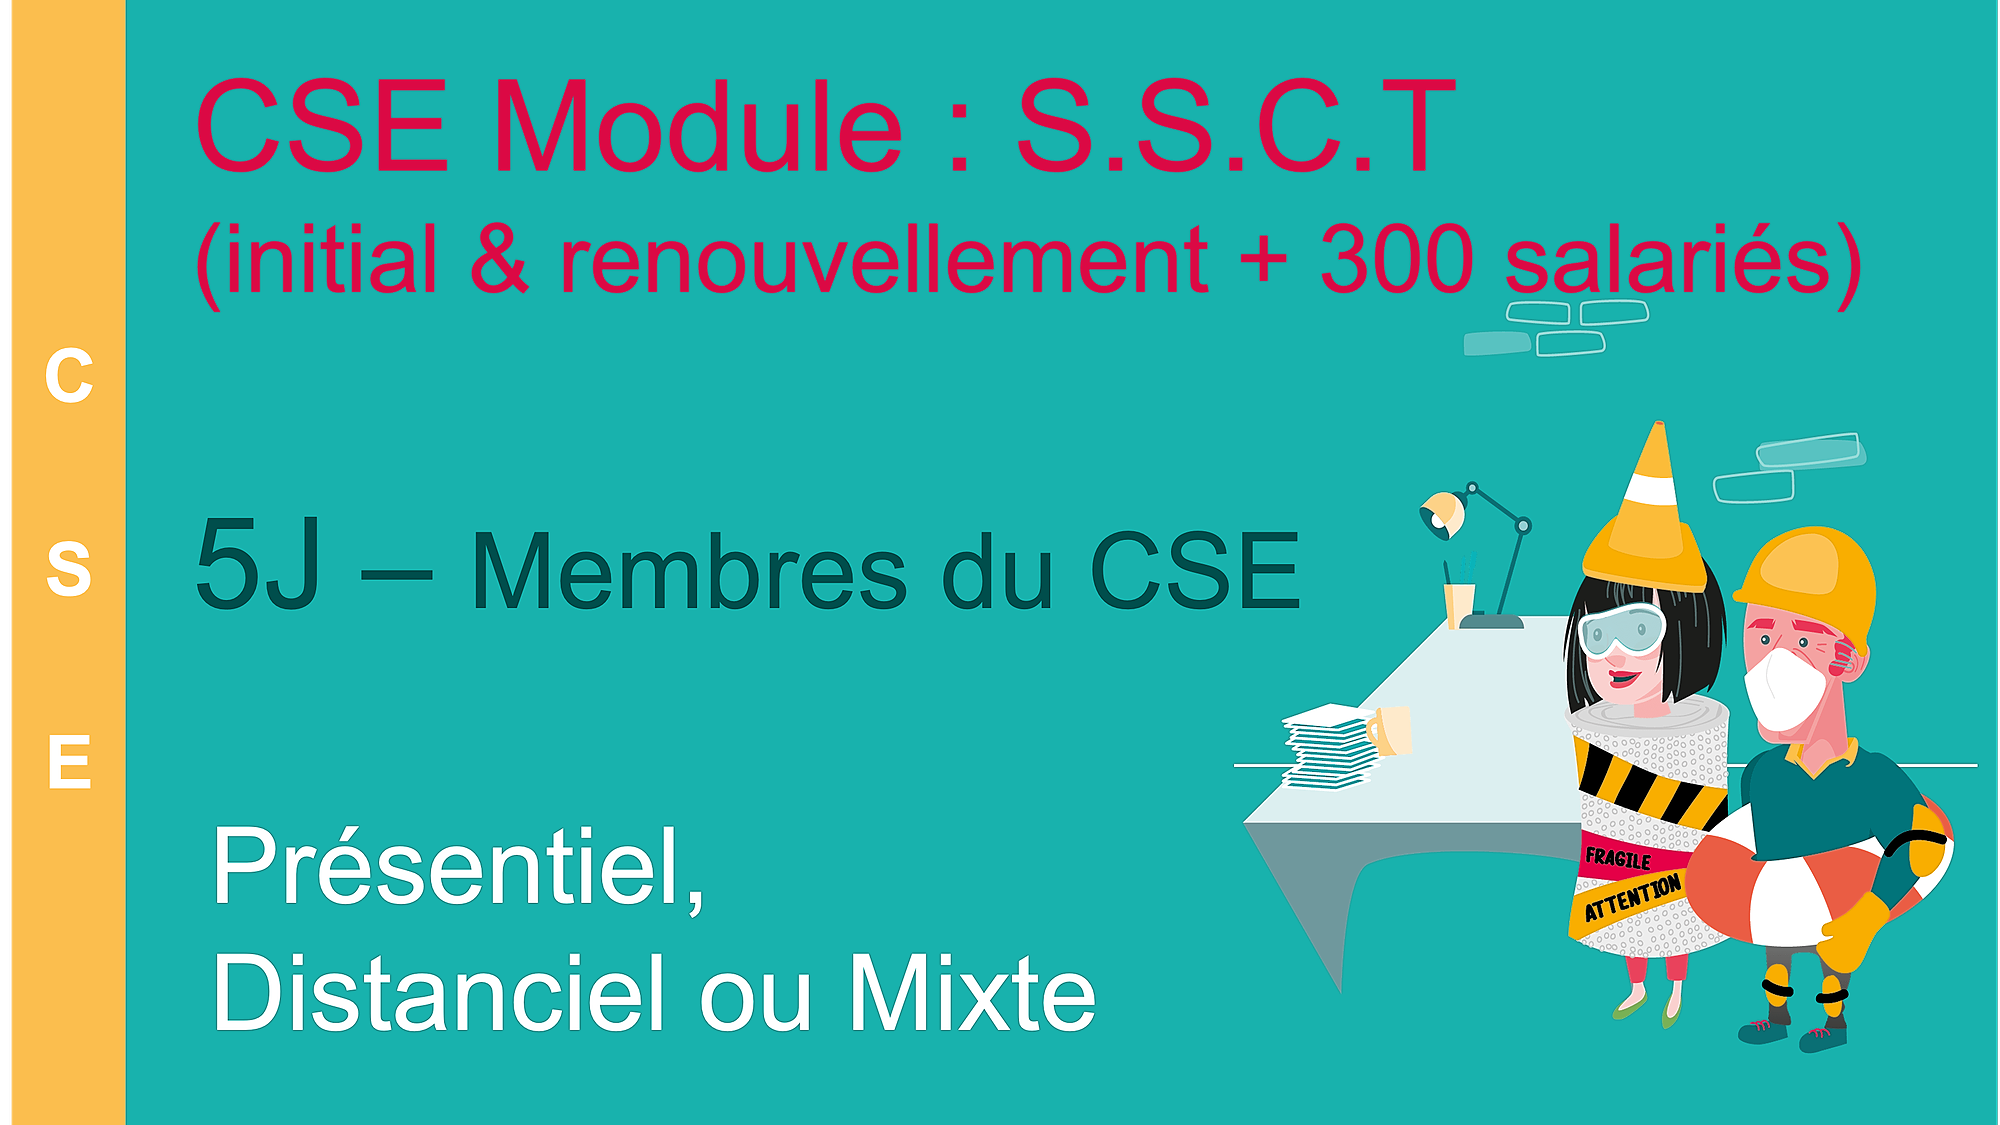 Représentation de la formation : Membre du CST - Module SSCT - 5 jours - (CST-SSCT-5J)